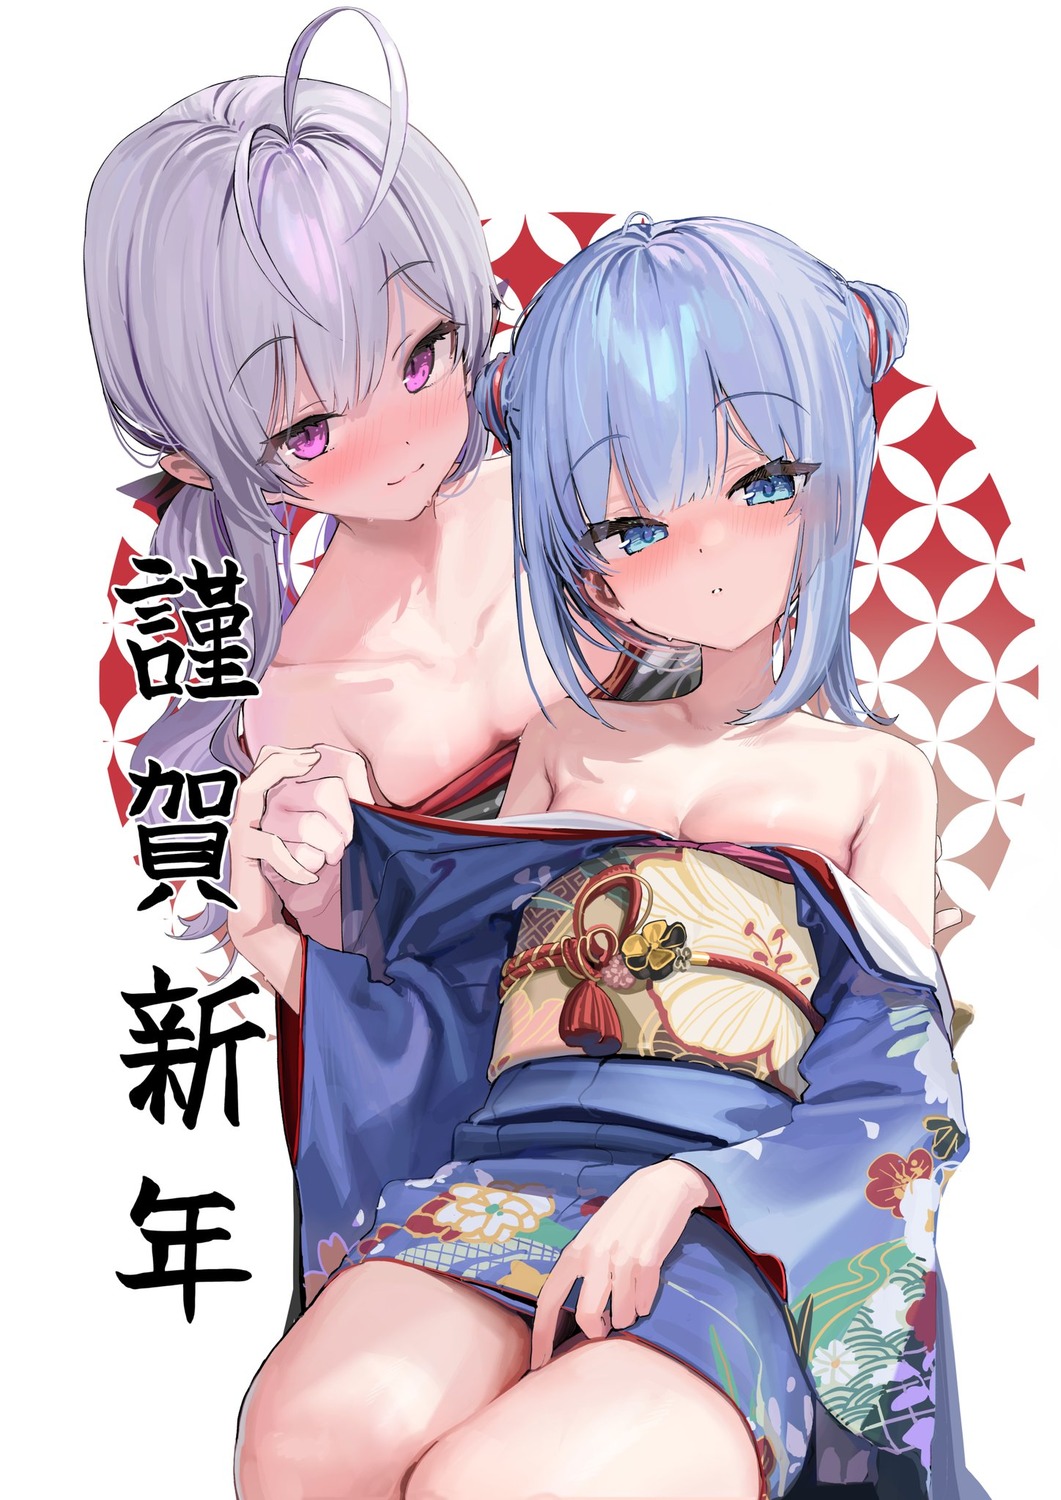 kanzarin kimono loli no_bra open_shirt undressing